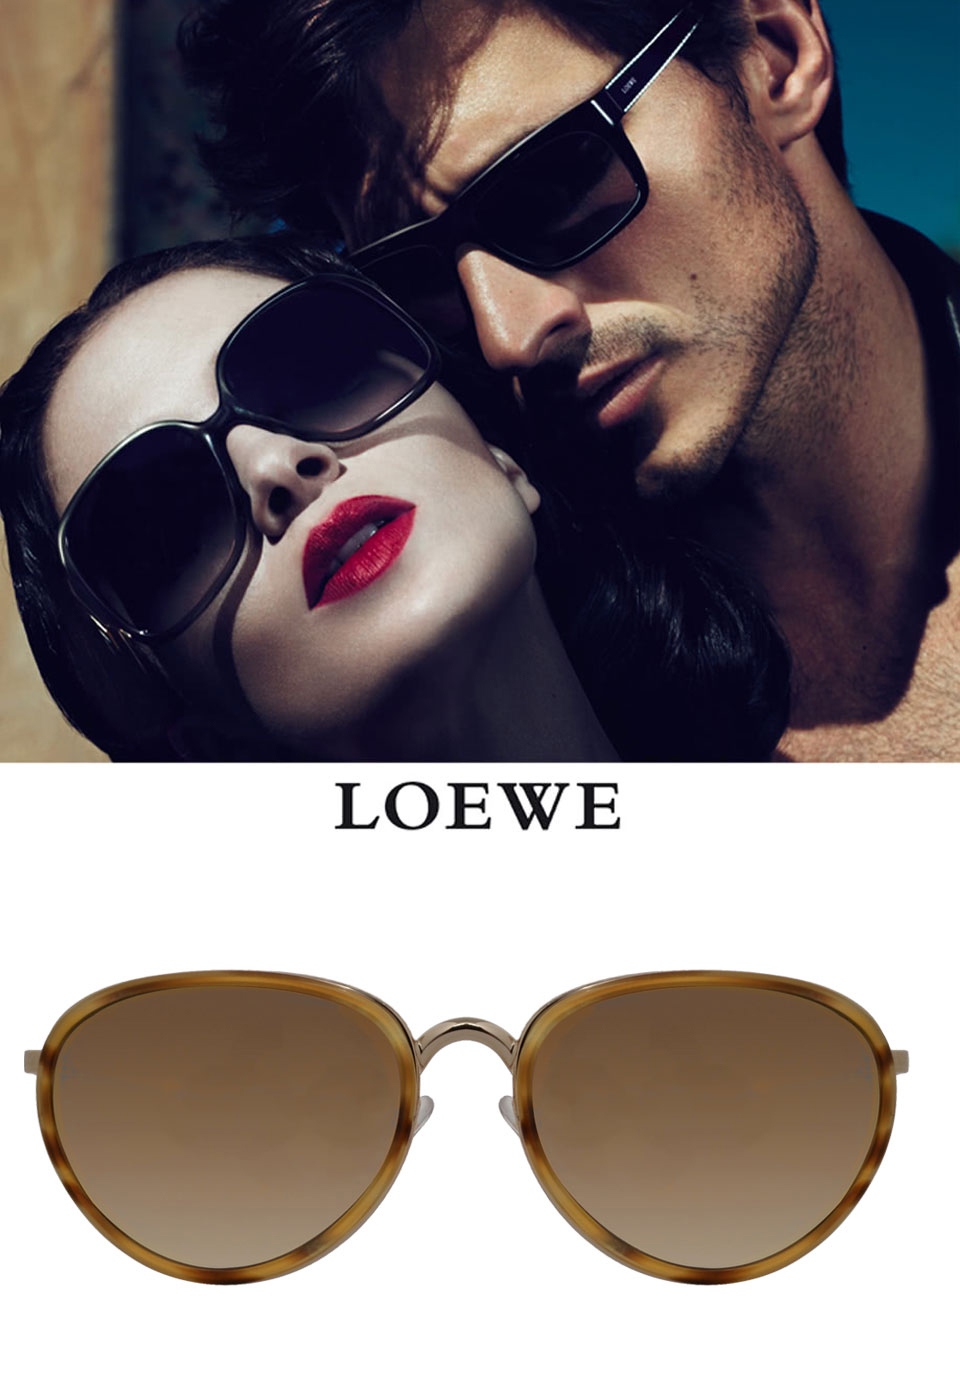 LOEWE 羅威 西班牙奢華訂製款-氣質細框型太陽眼鏡(琥珀